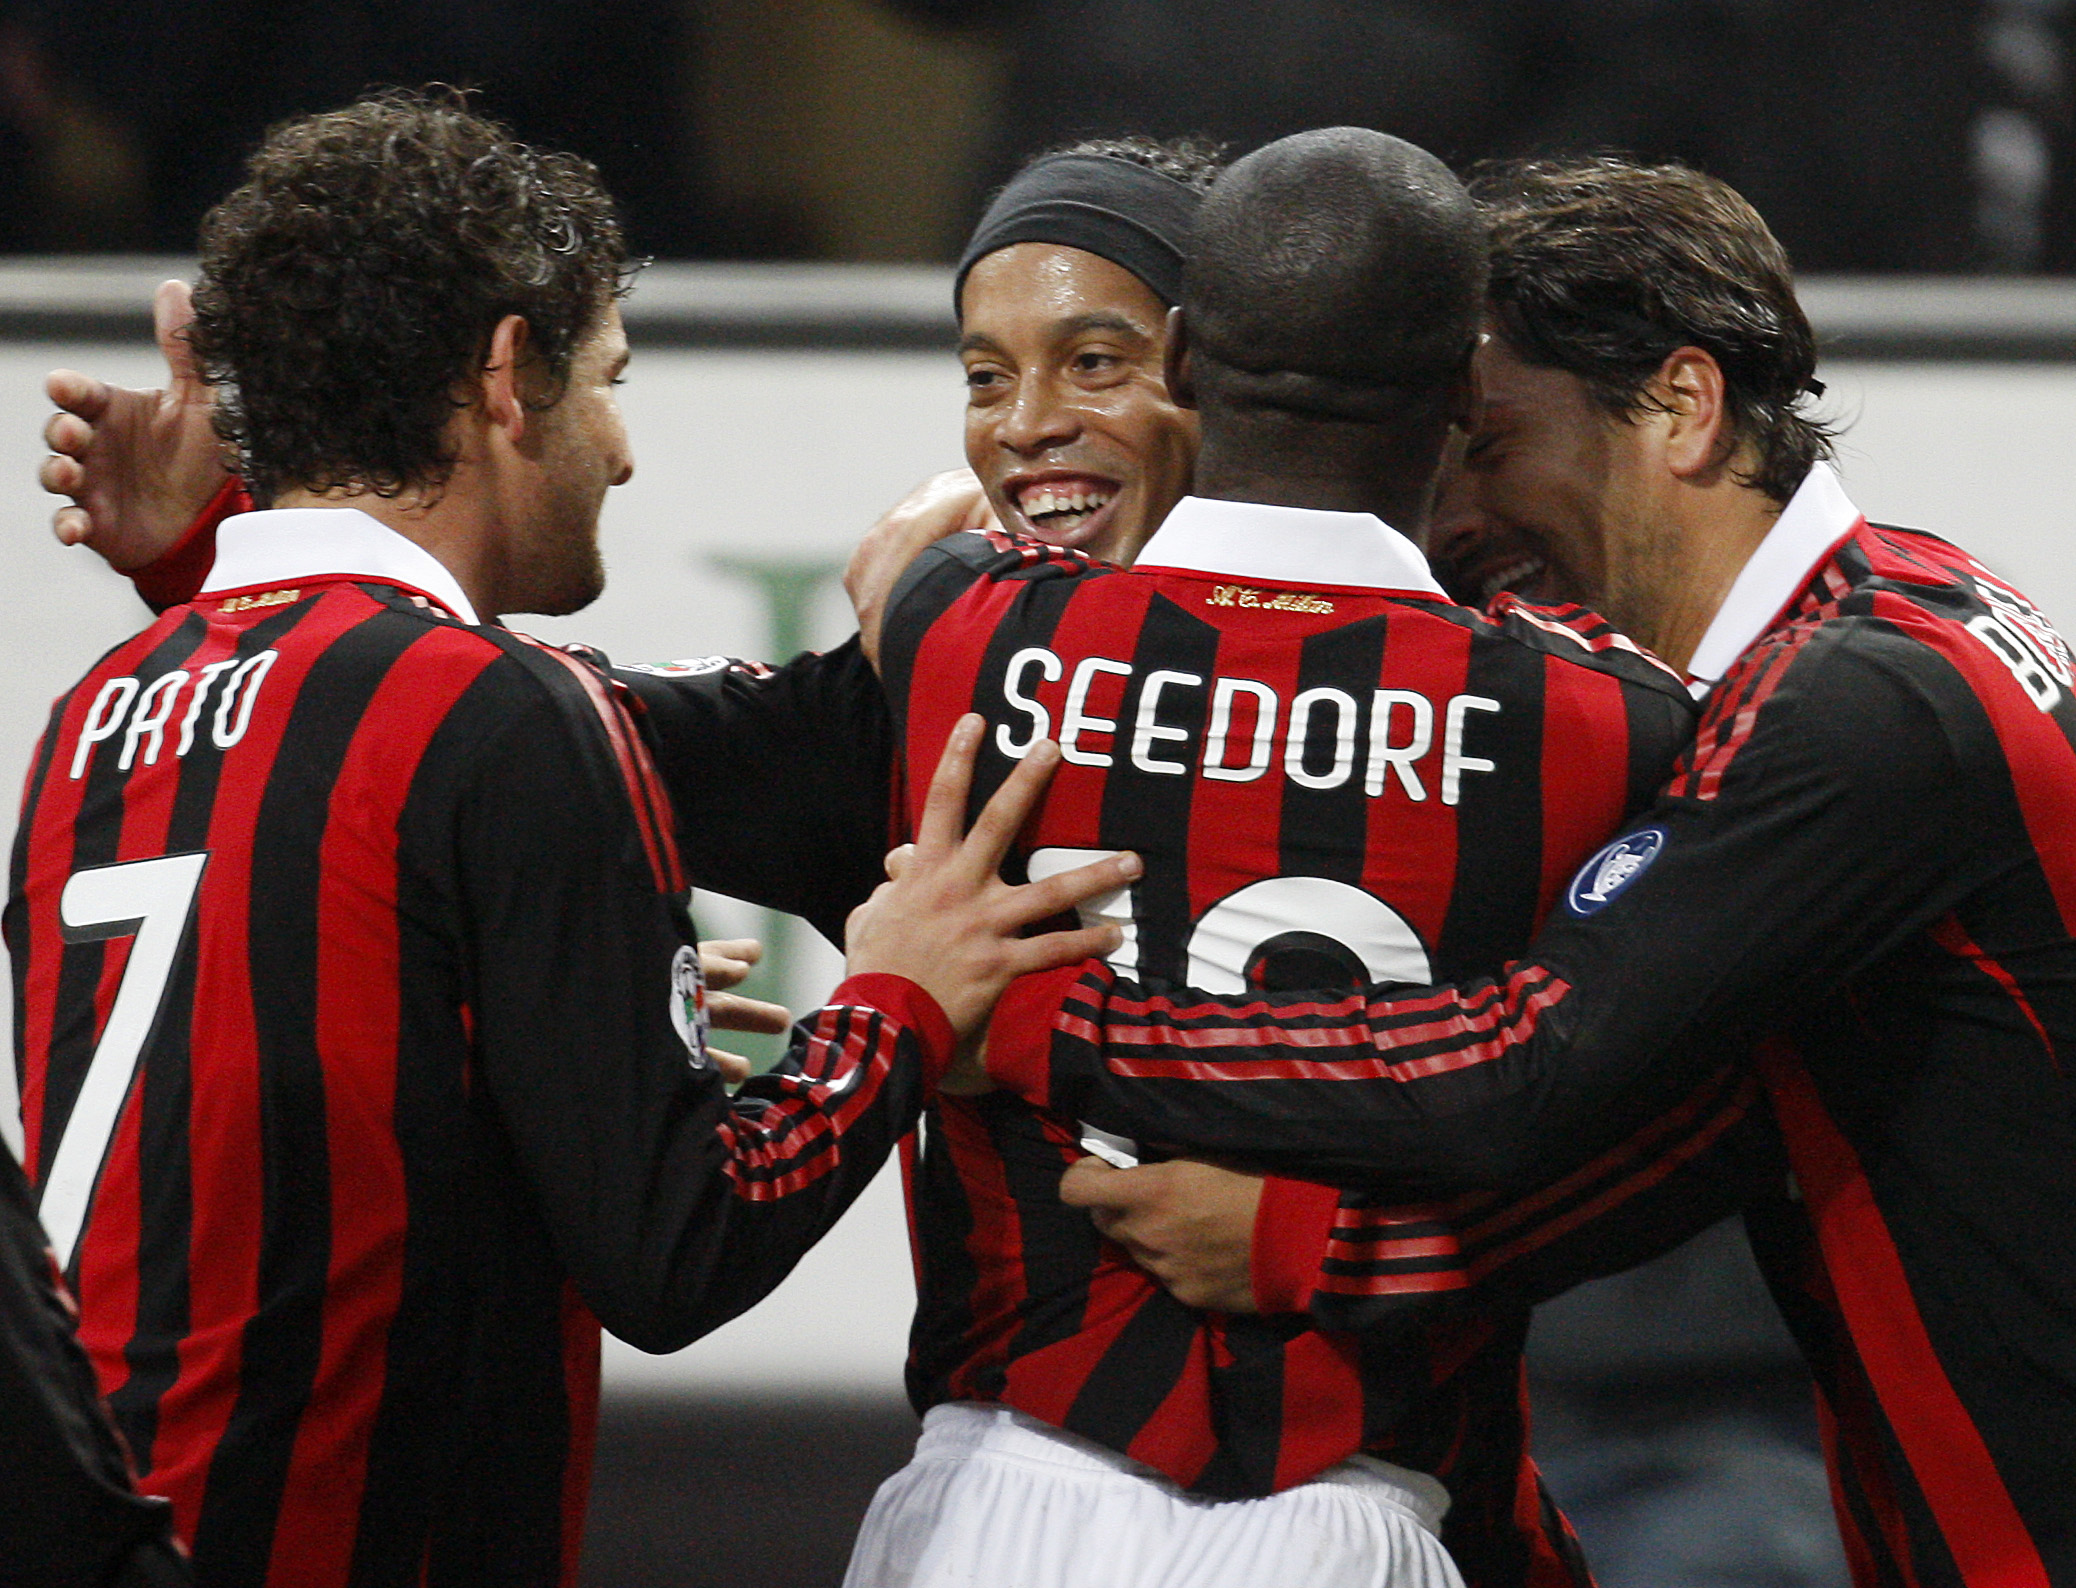 Pato och Seedorf saknas. Ronaldinho är däremot stekhet. 